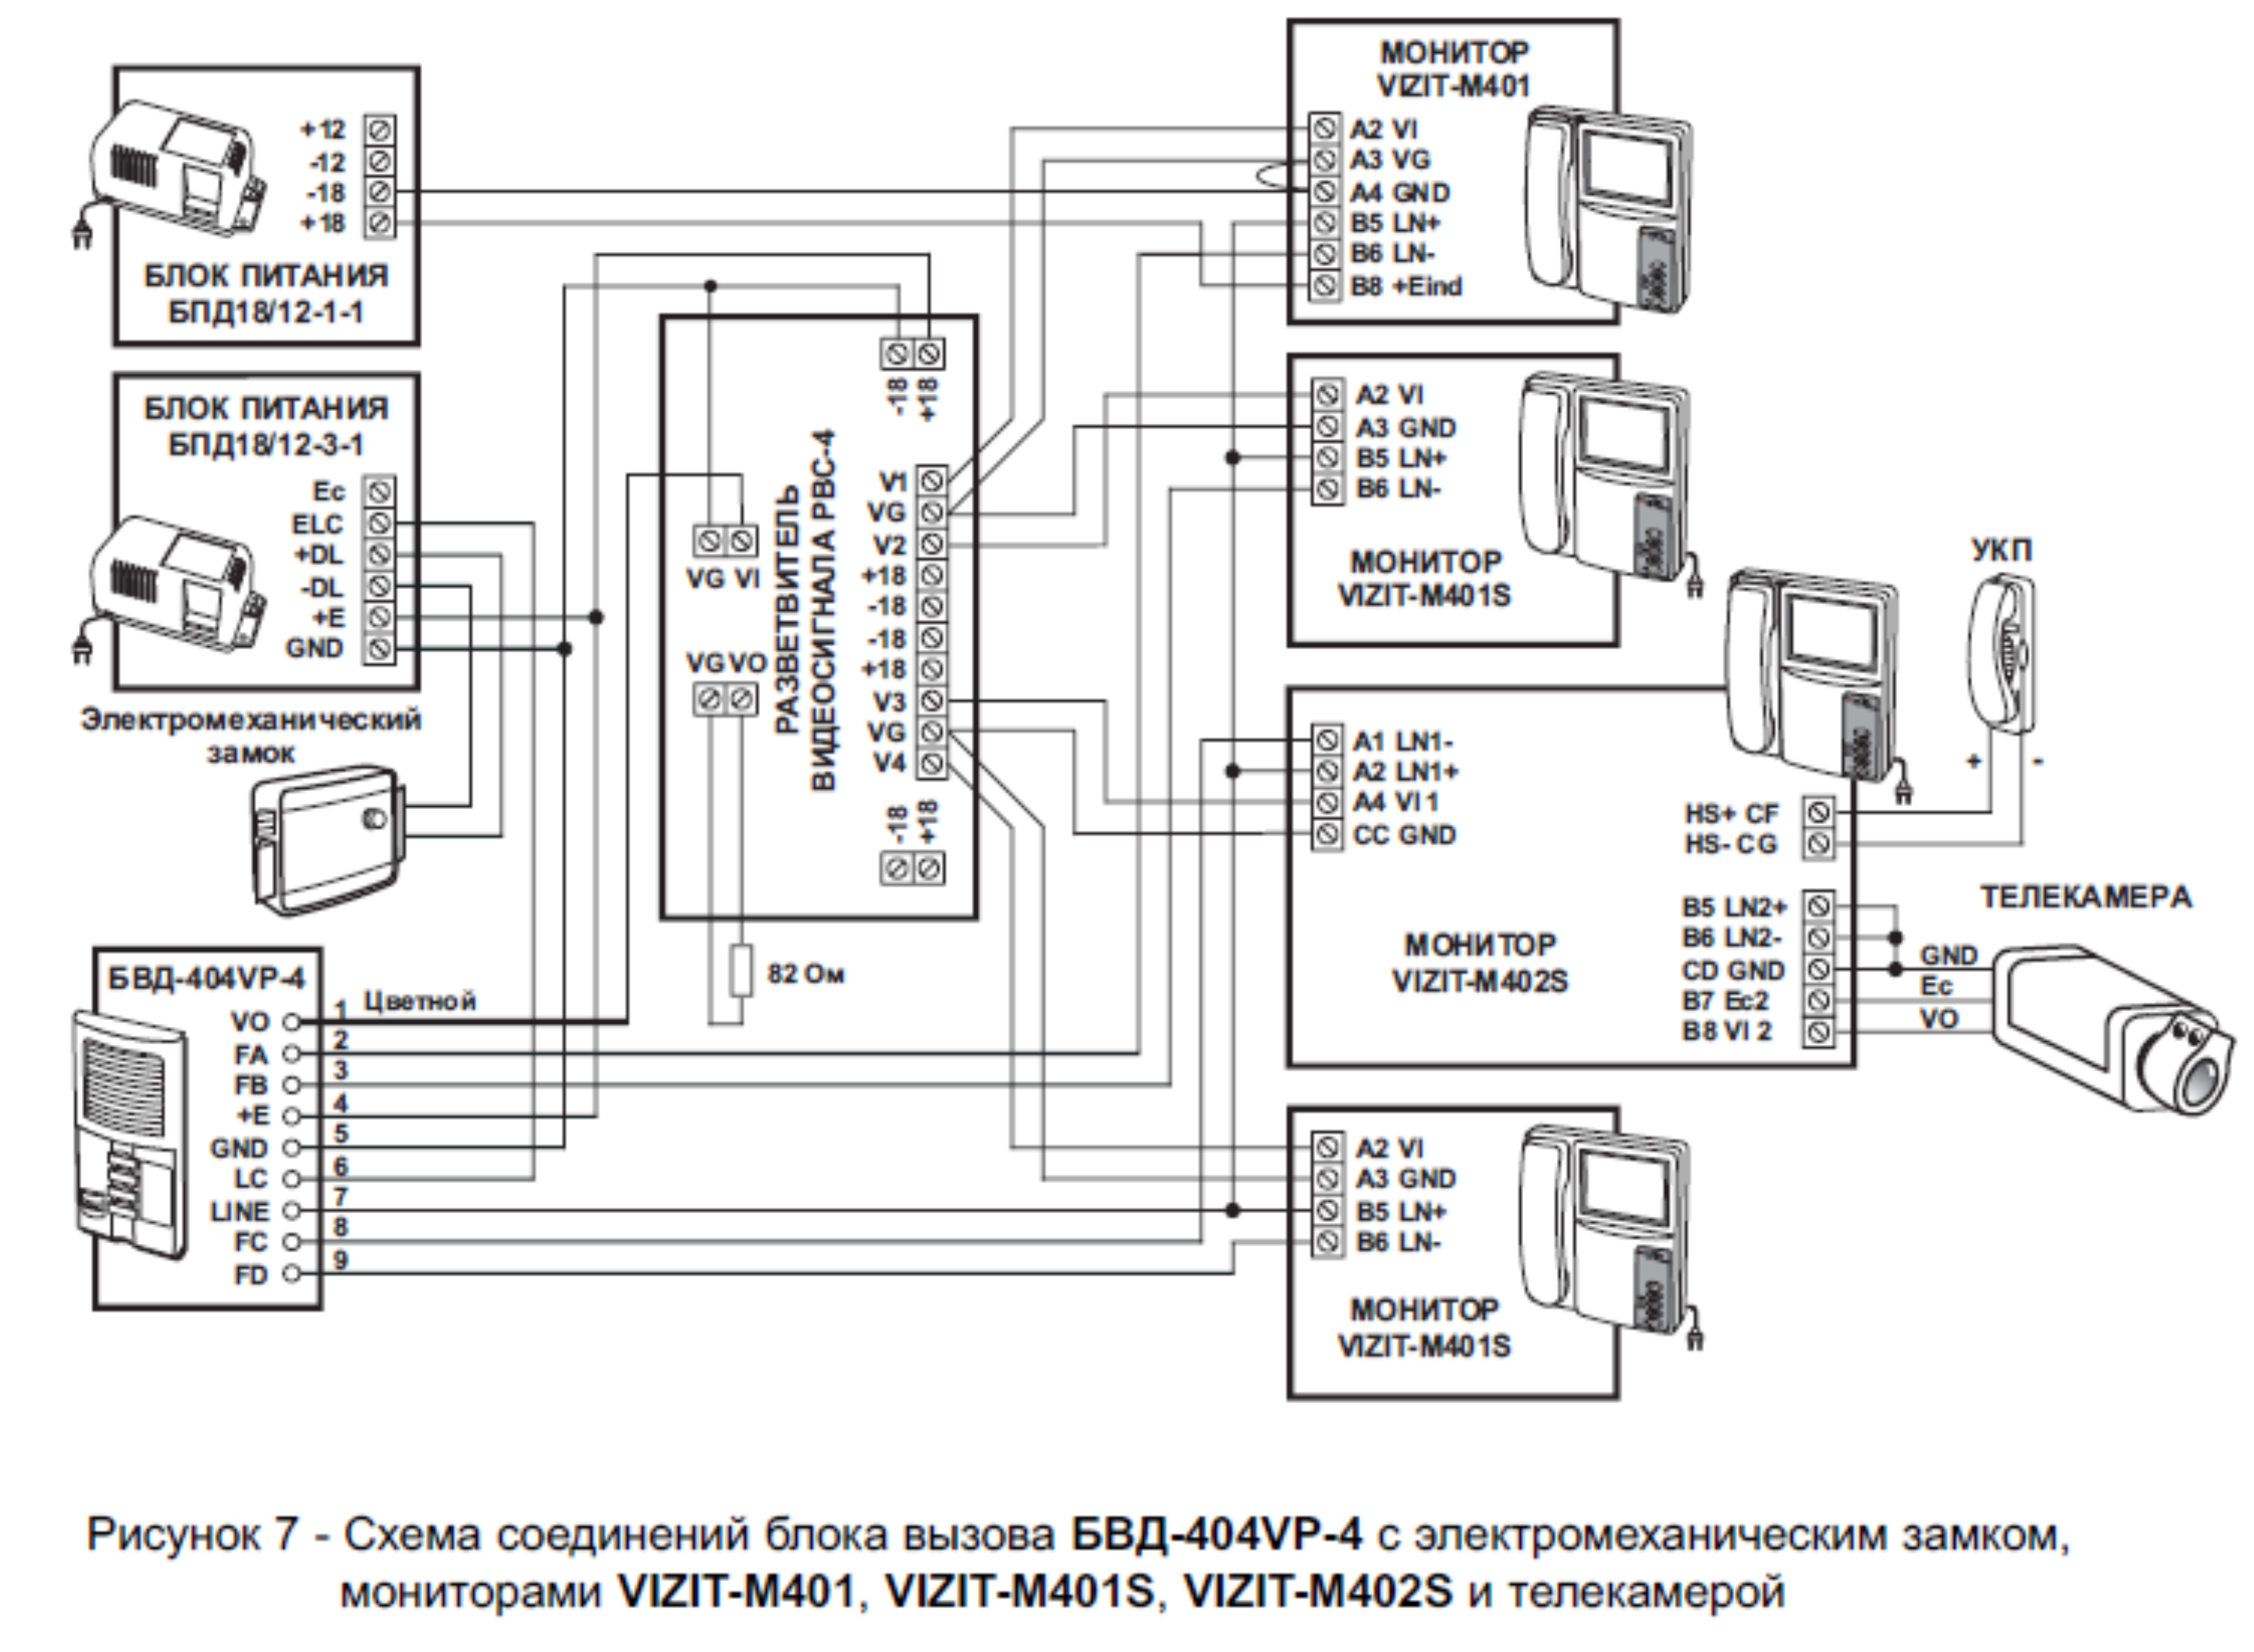 Рисунок 7 - Схема соединений бл ок а вызова БВД-404VP-4 с электромеханическим замком, мониторами VIZIT-M401, VIZIT-M401S, VIZIT-M402S и телекамерой